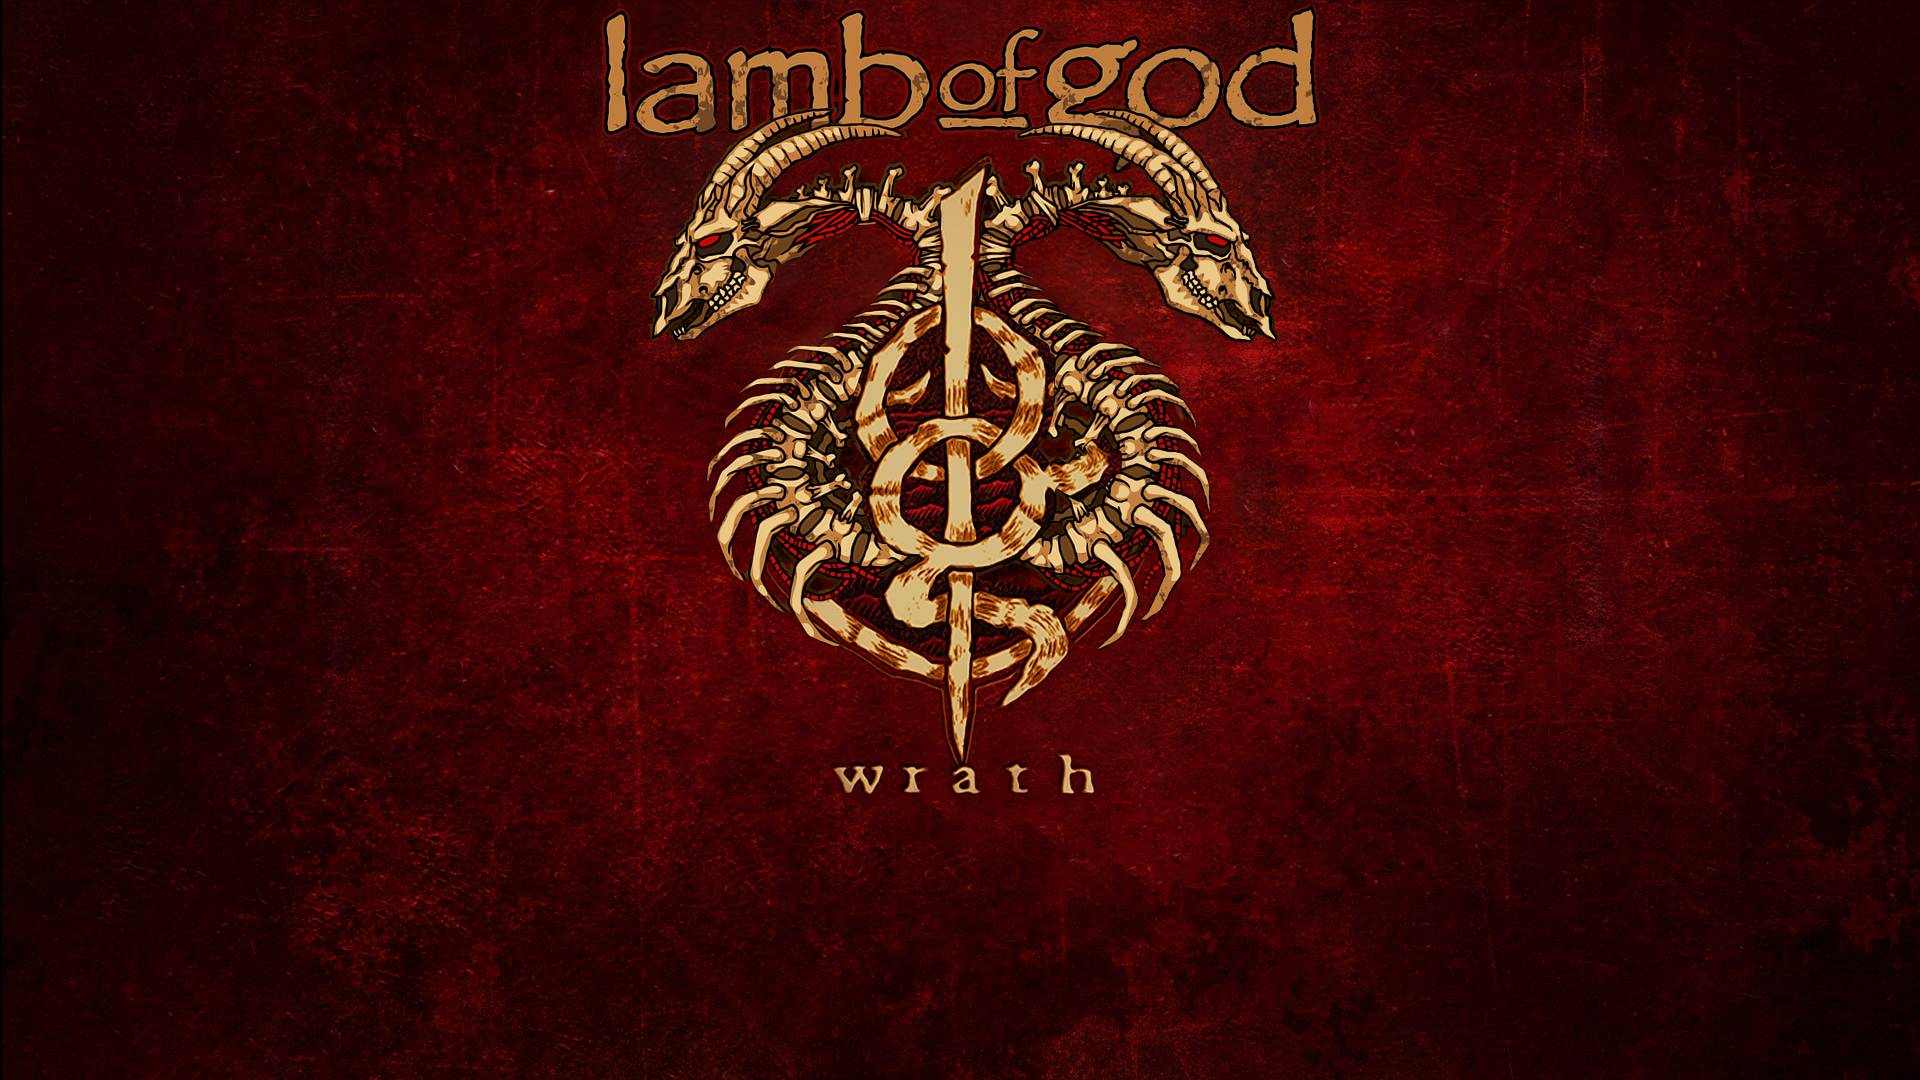 Lamb Of God Computer Wallpaper, Desktop Background 1152x864 Id